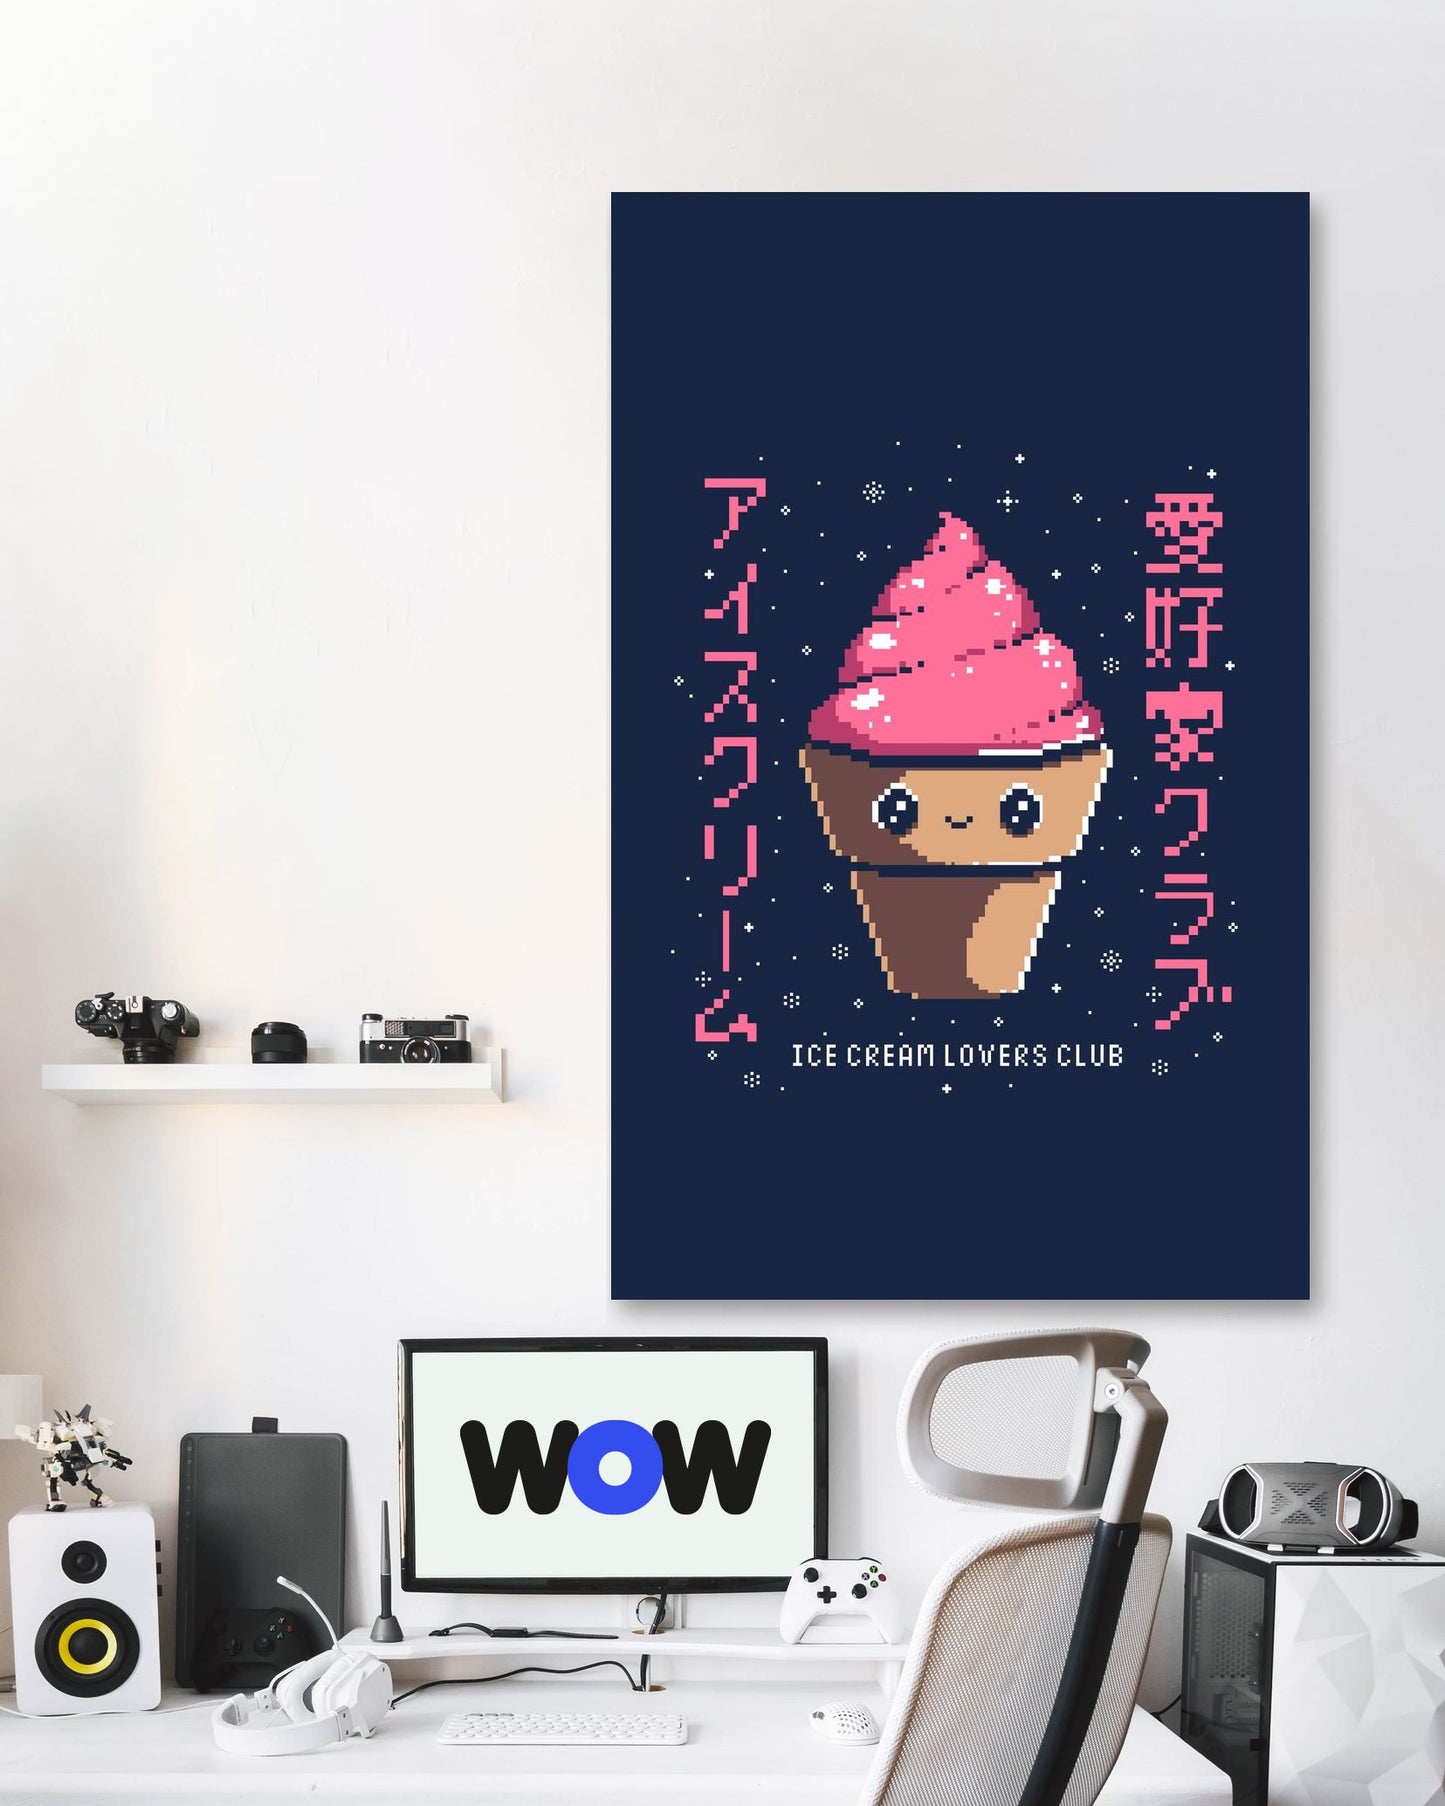 Ice Cream Lovers Club - @Ilustrata